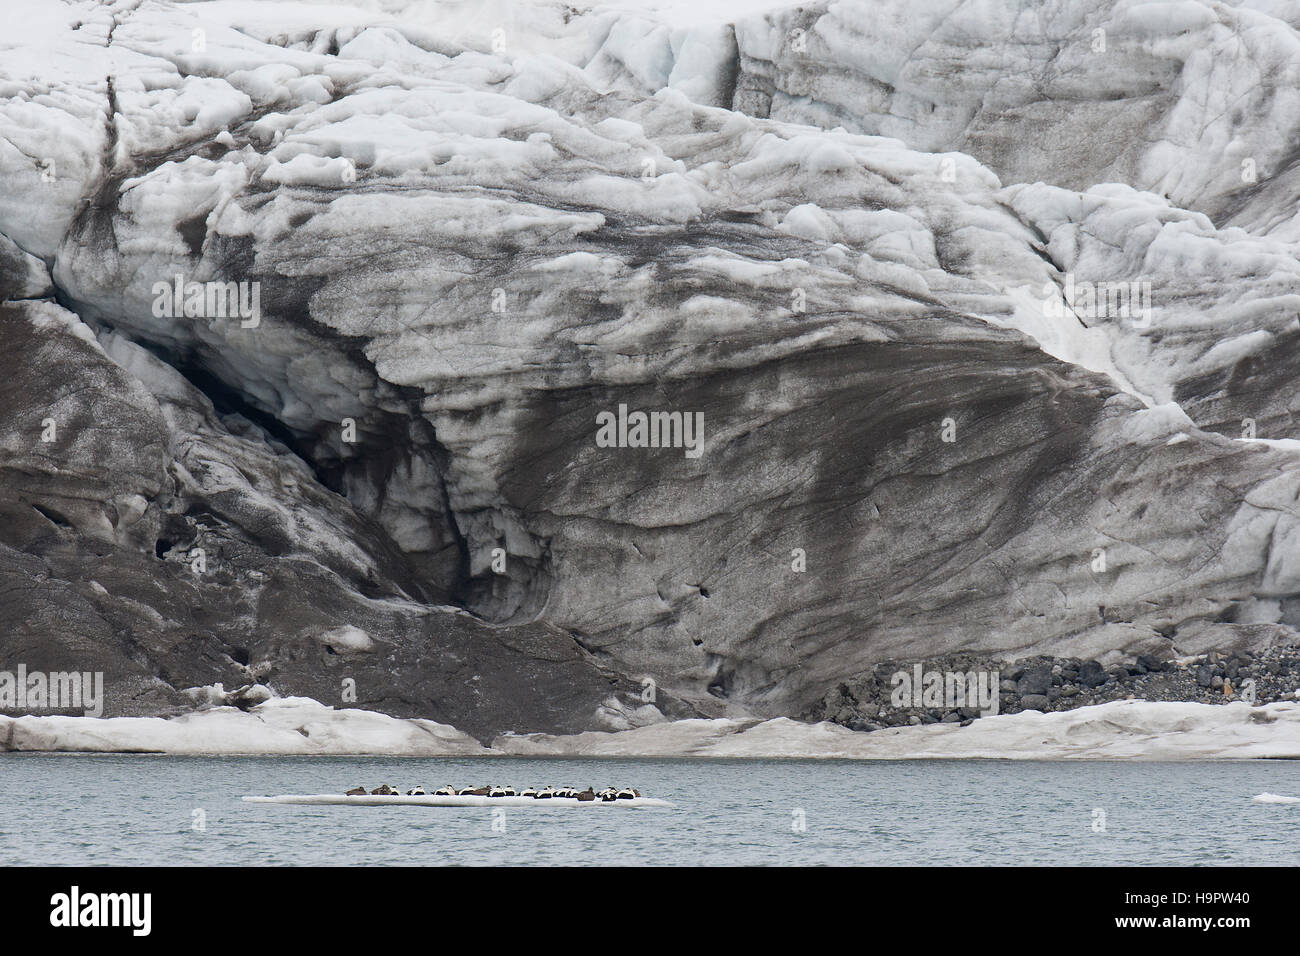 Eider comune (Somateria mollissima) anatre in appoggio sul ghiaccio floe nella parte anteriore della parete di ghiaccio del ghiacciaio di Nordenskiöldbreen, Isfjorden, Spitsbergen / Svalbard Foto Stock